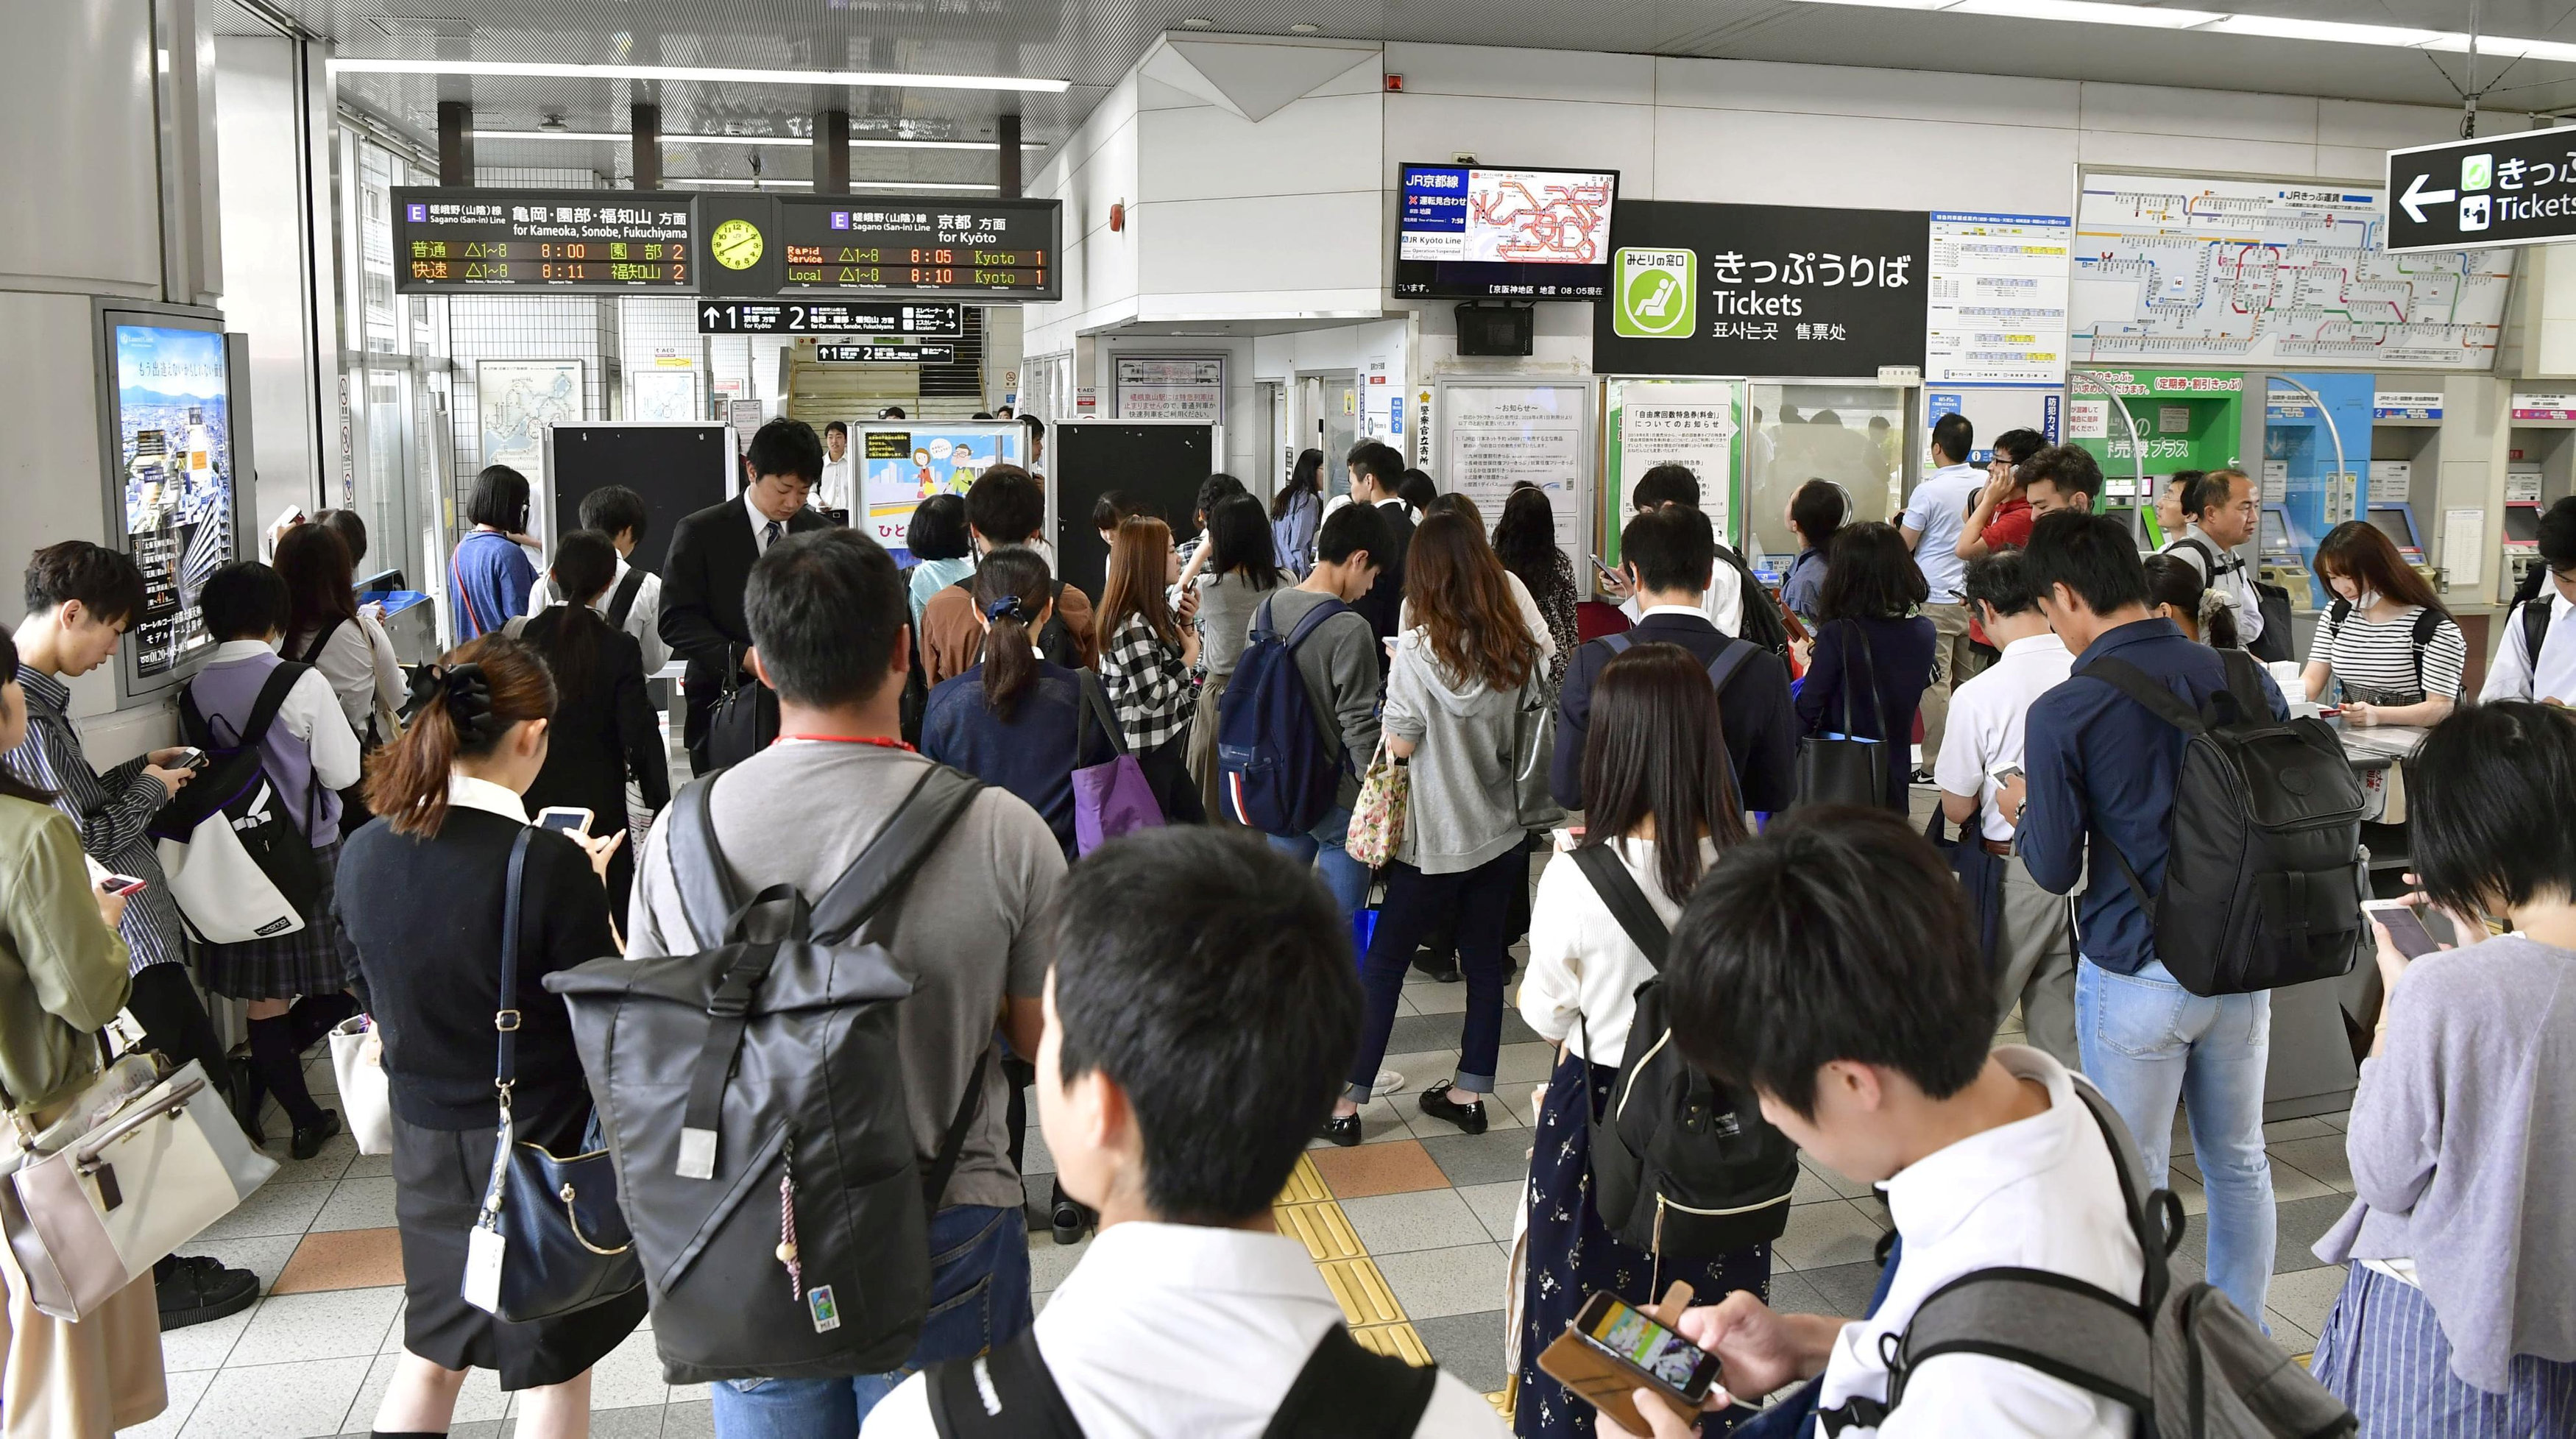 	مواطنين يابانيين بانتظار إعادة تشغيل القطارات